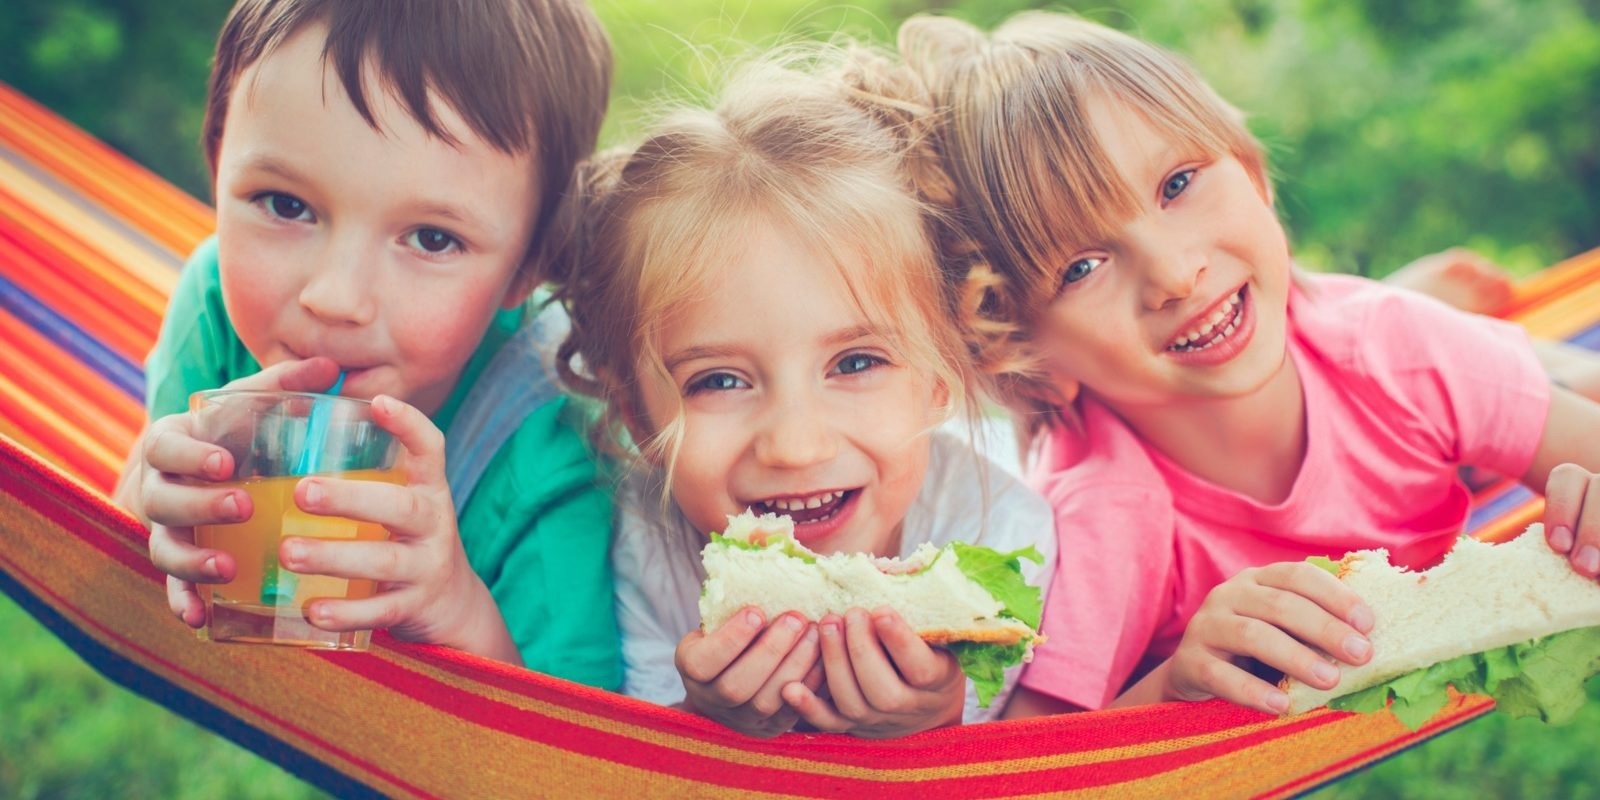 Consigli utili per una corretta alimentazione dei bambini in estate